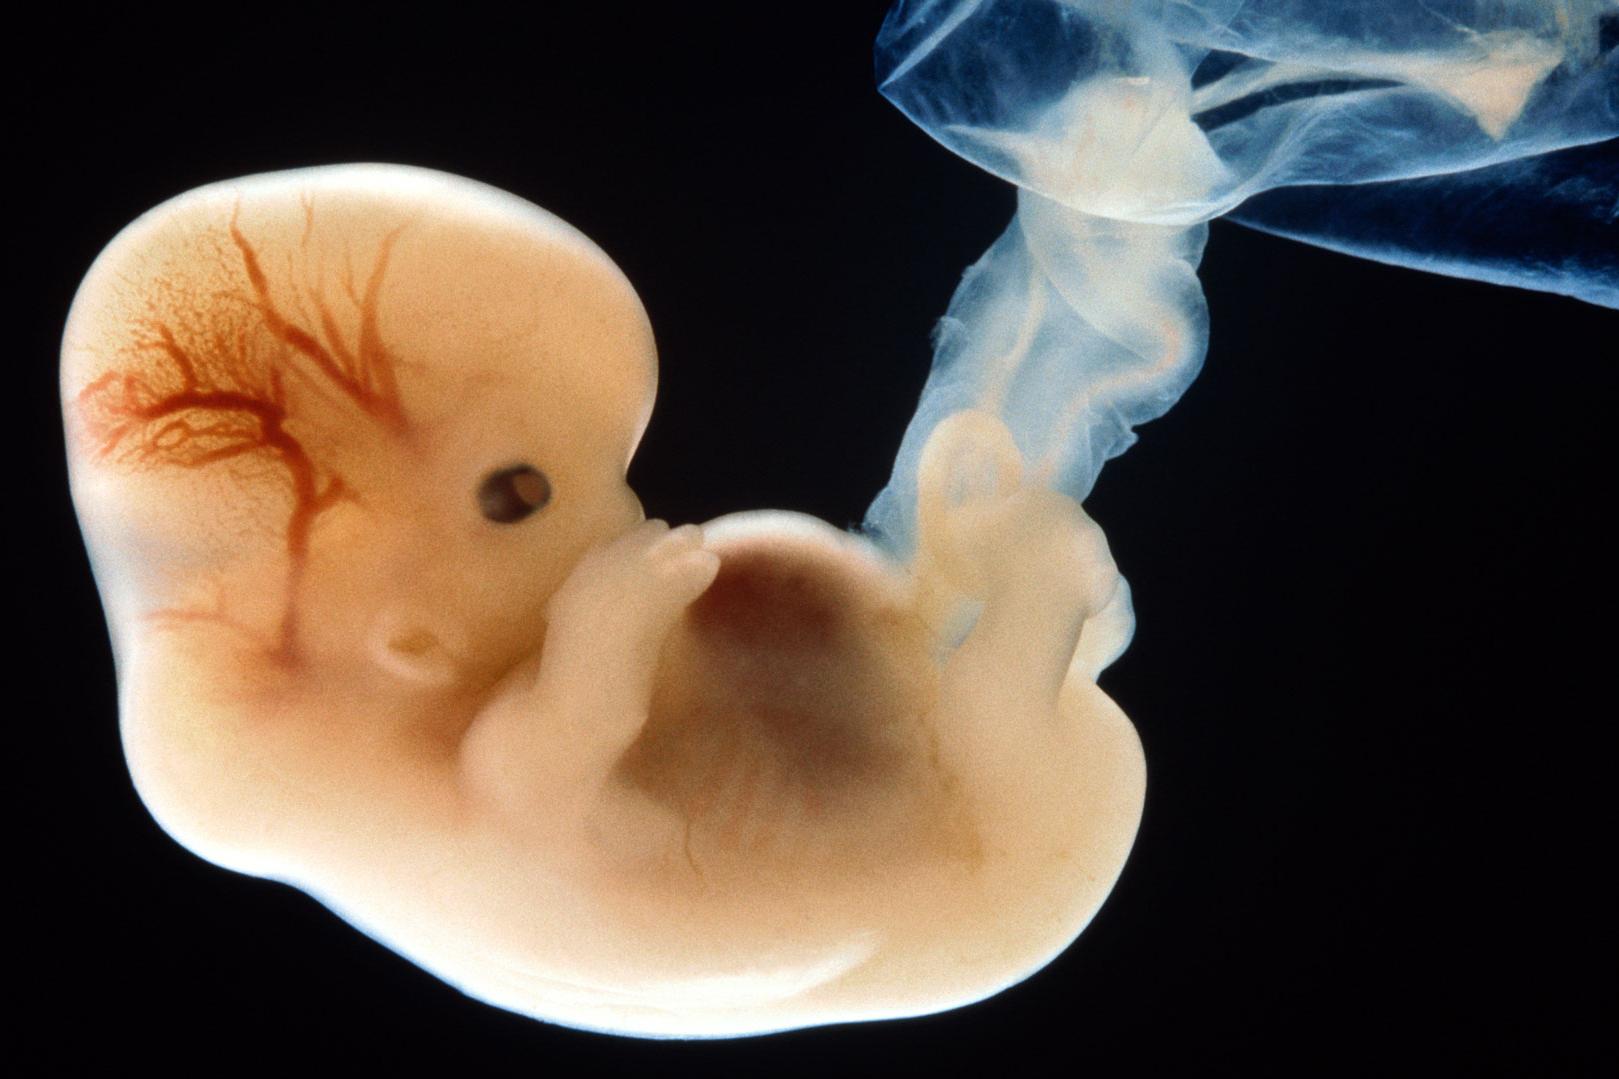 Младенцы в утробе могут видеть больше, чем считалось ранее: исследование 